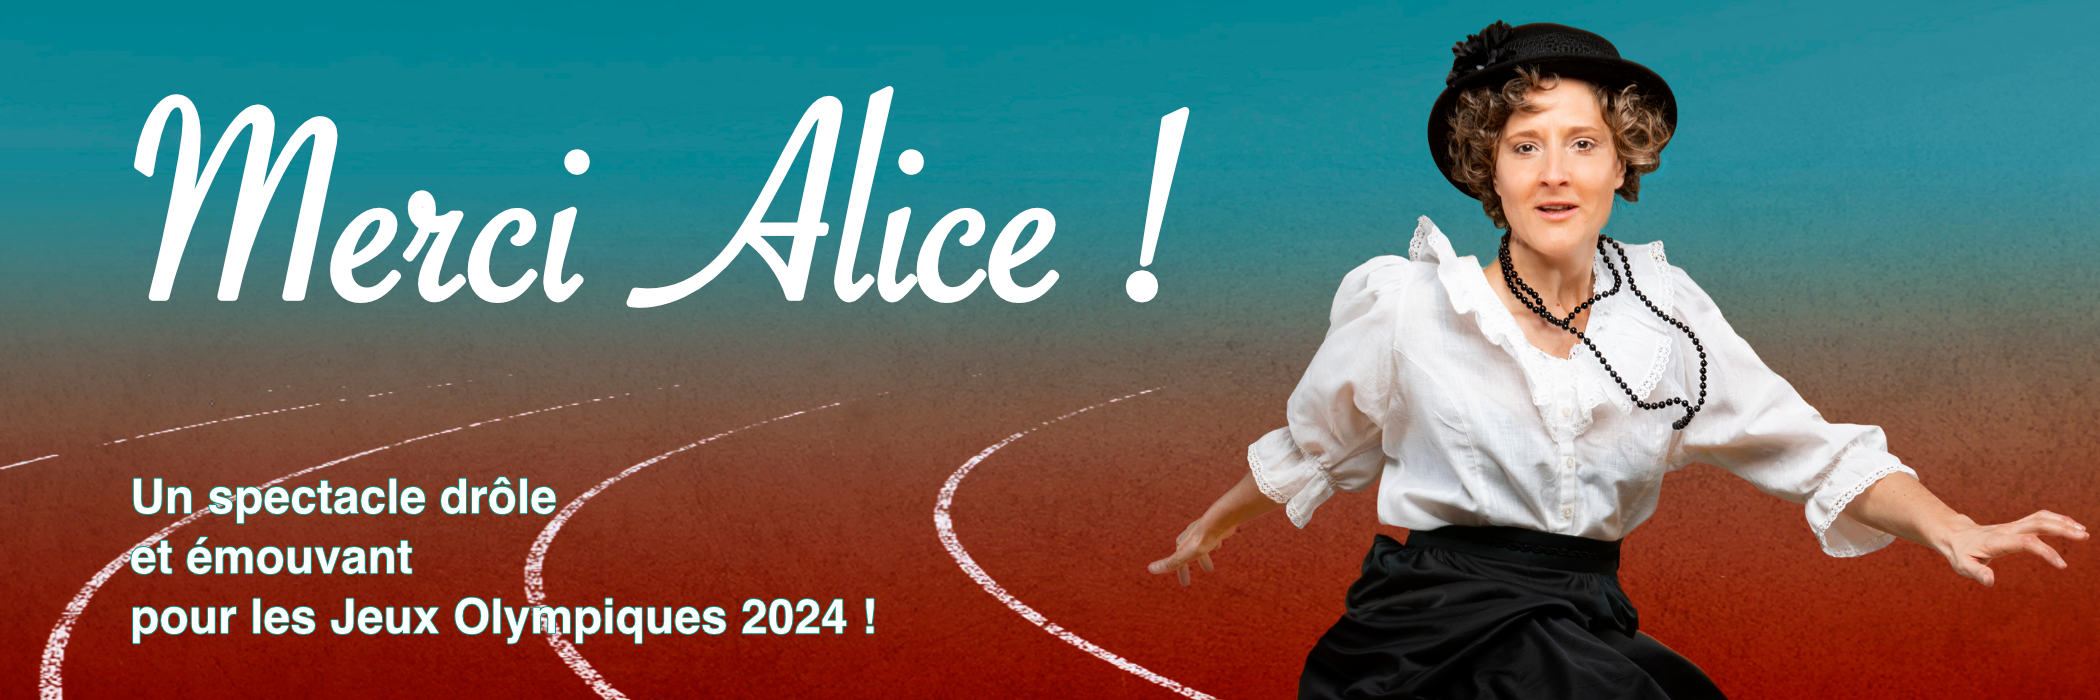 Spectacle "Merci Alice" idéal pour les JO